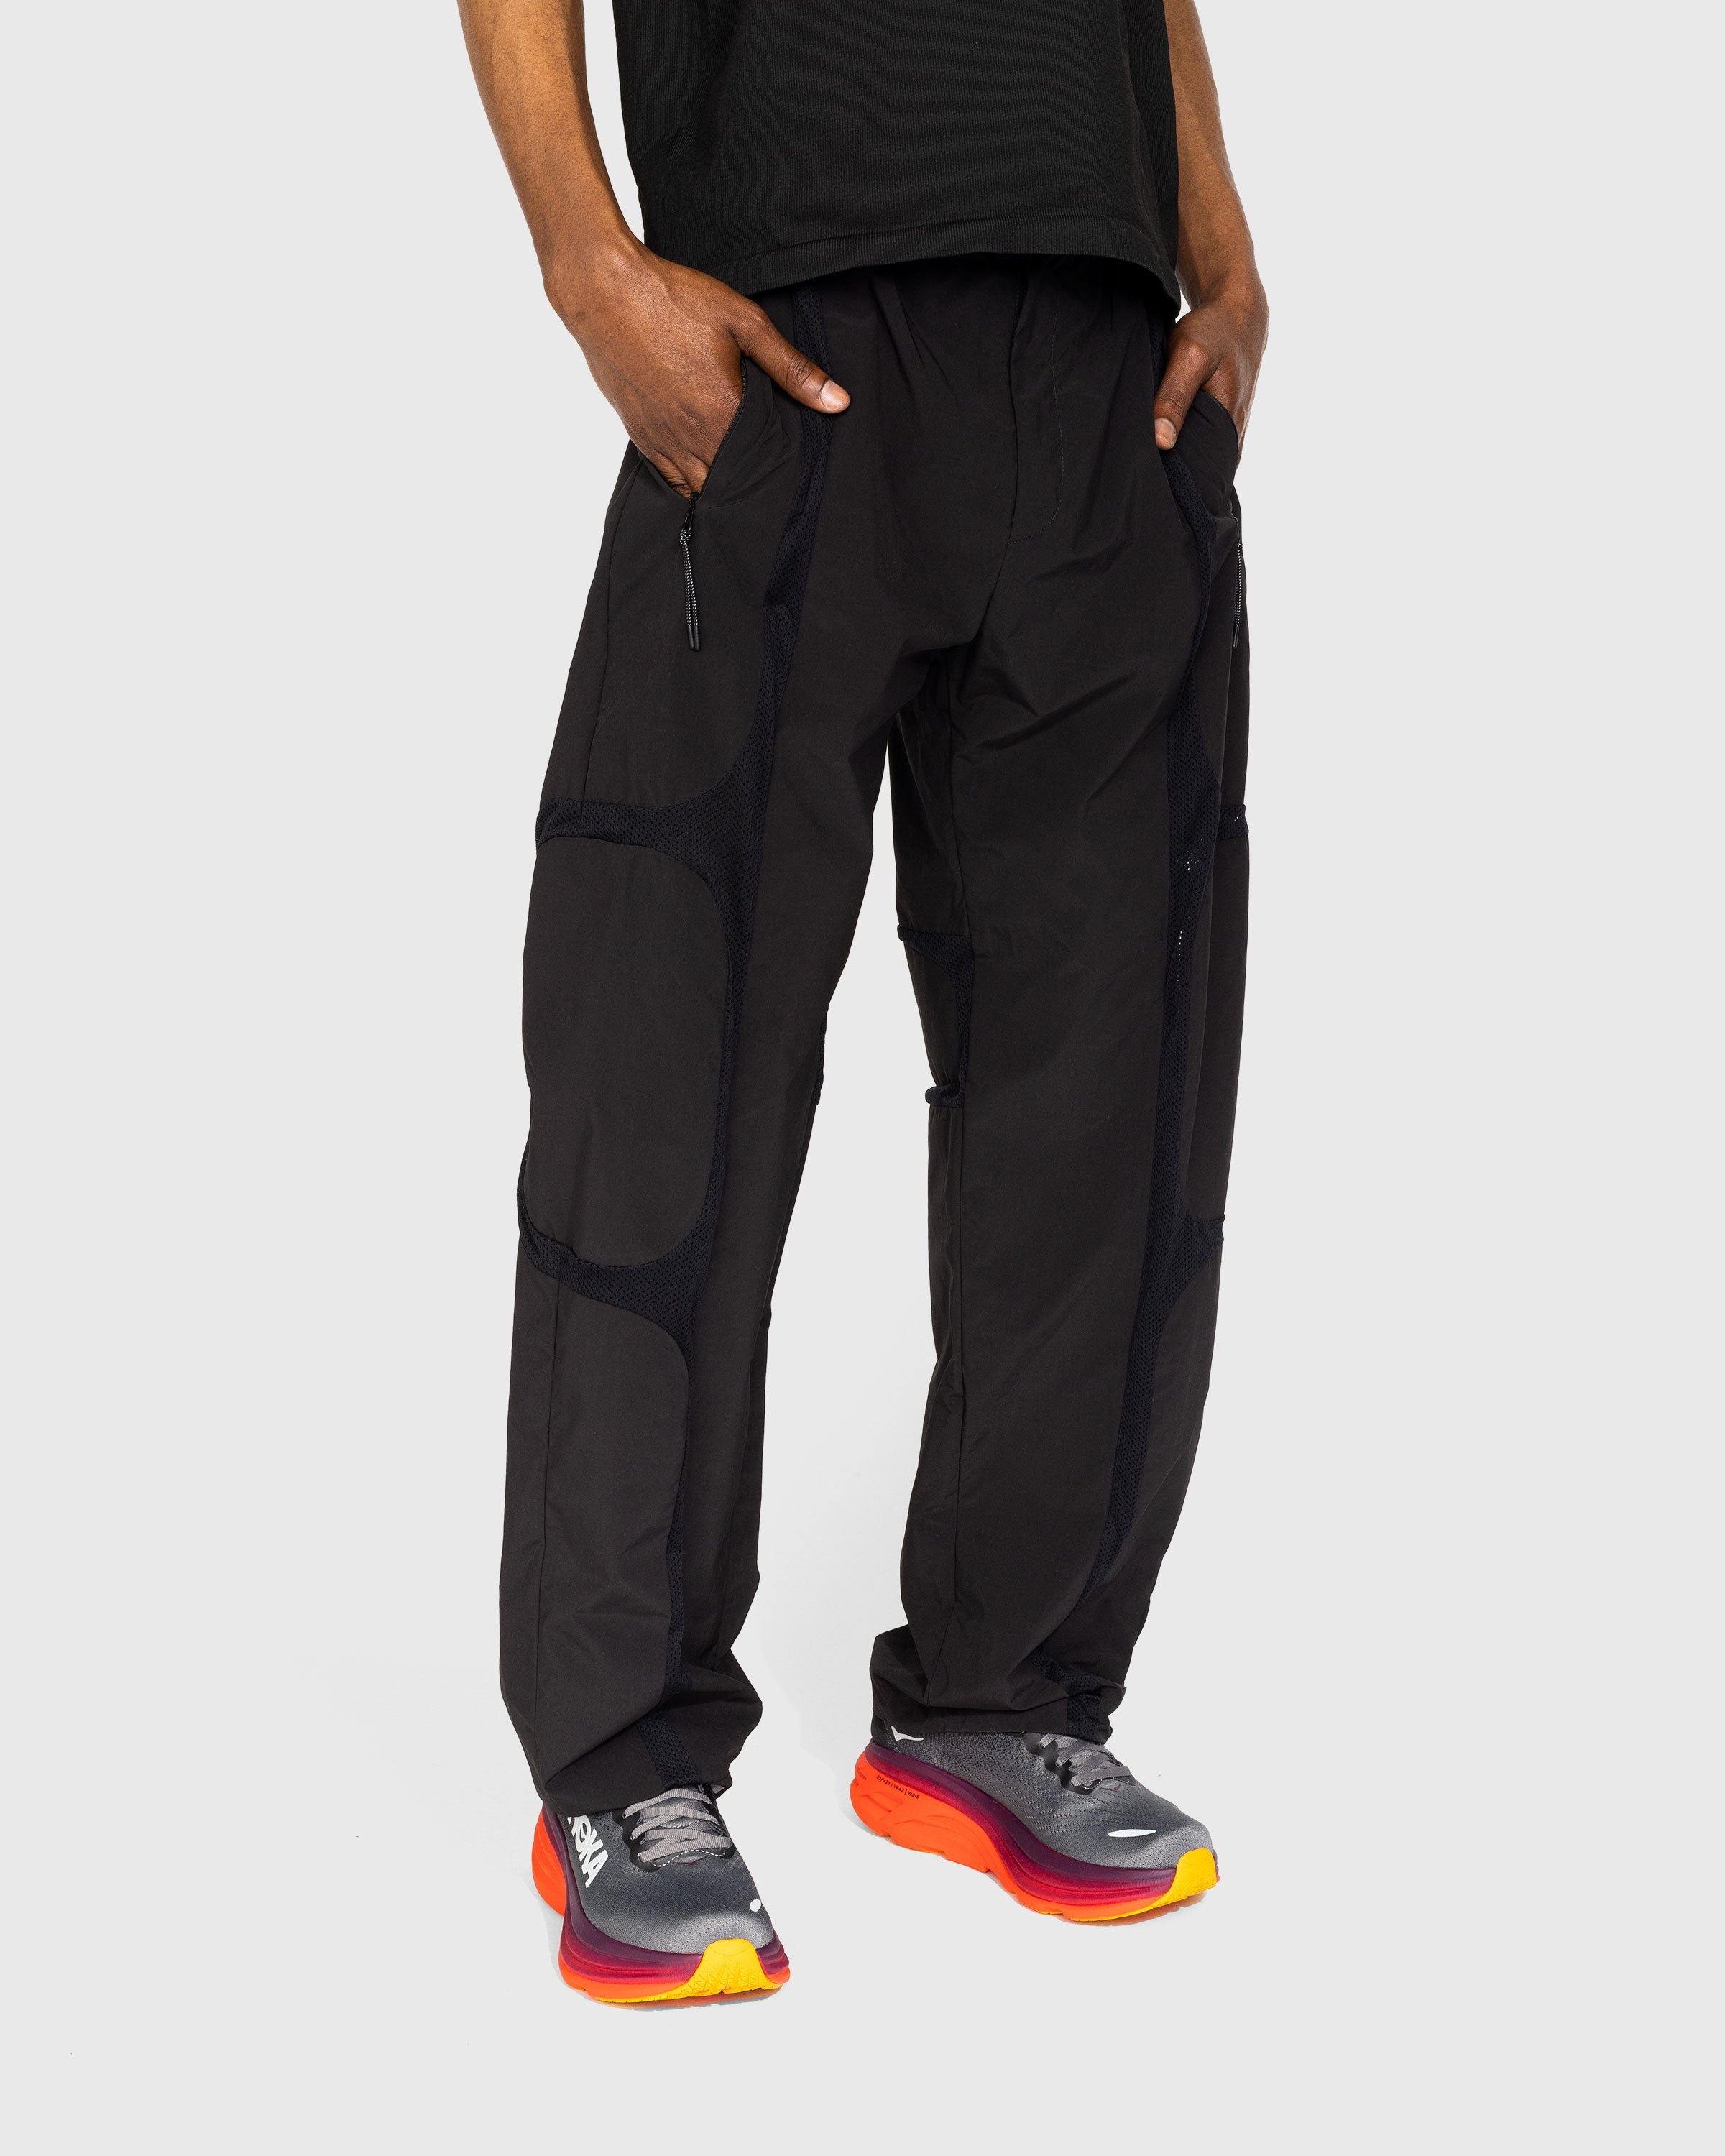 _J.L-A.L_ – Zephyr Trousers Black - Pants - Black - Image 2